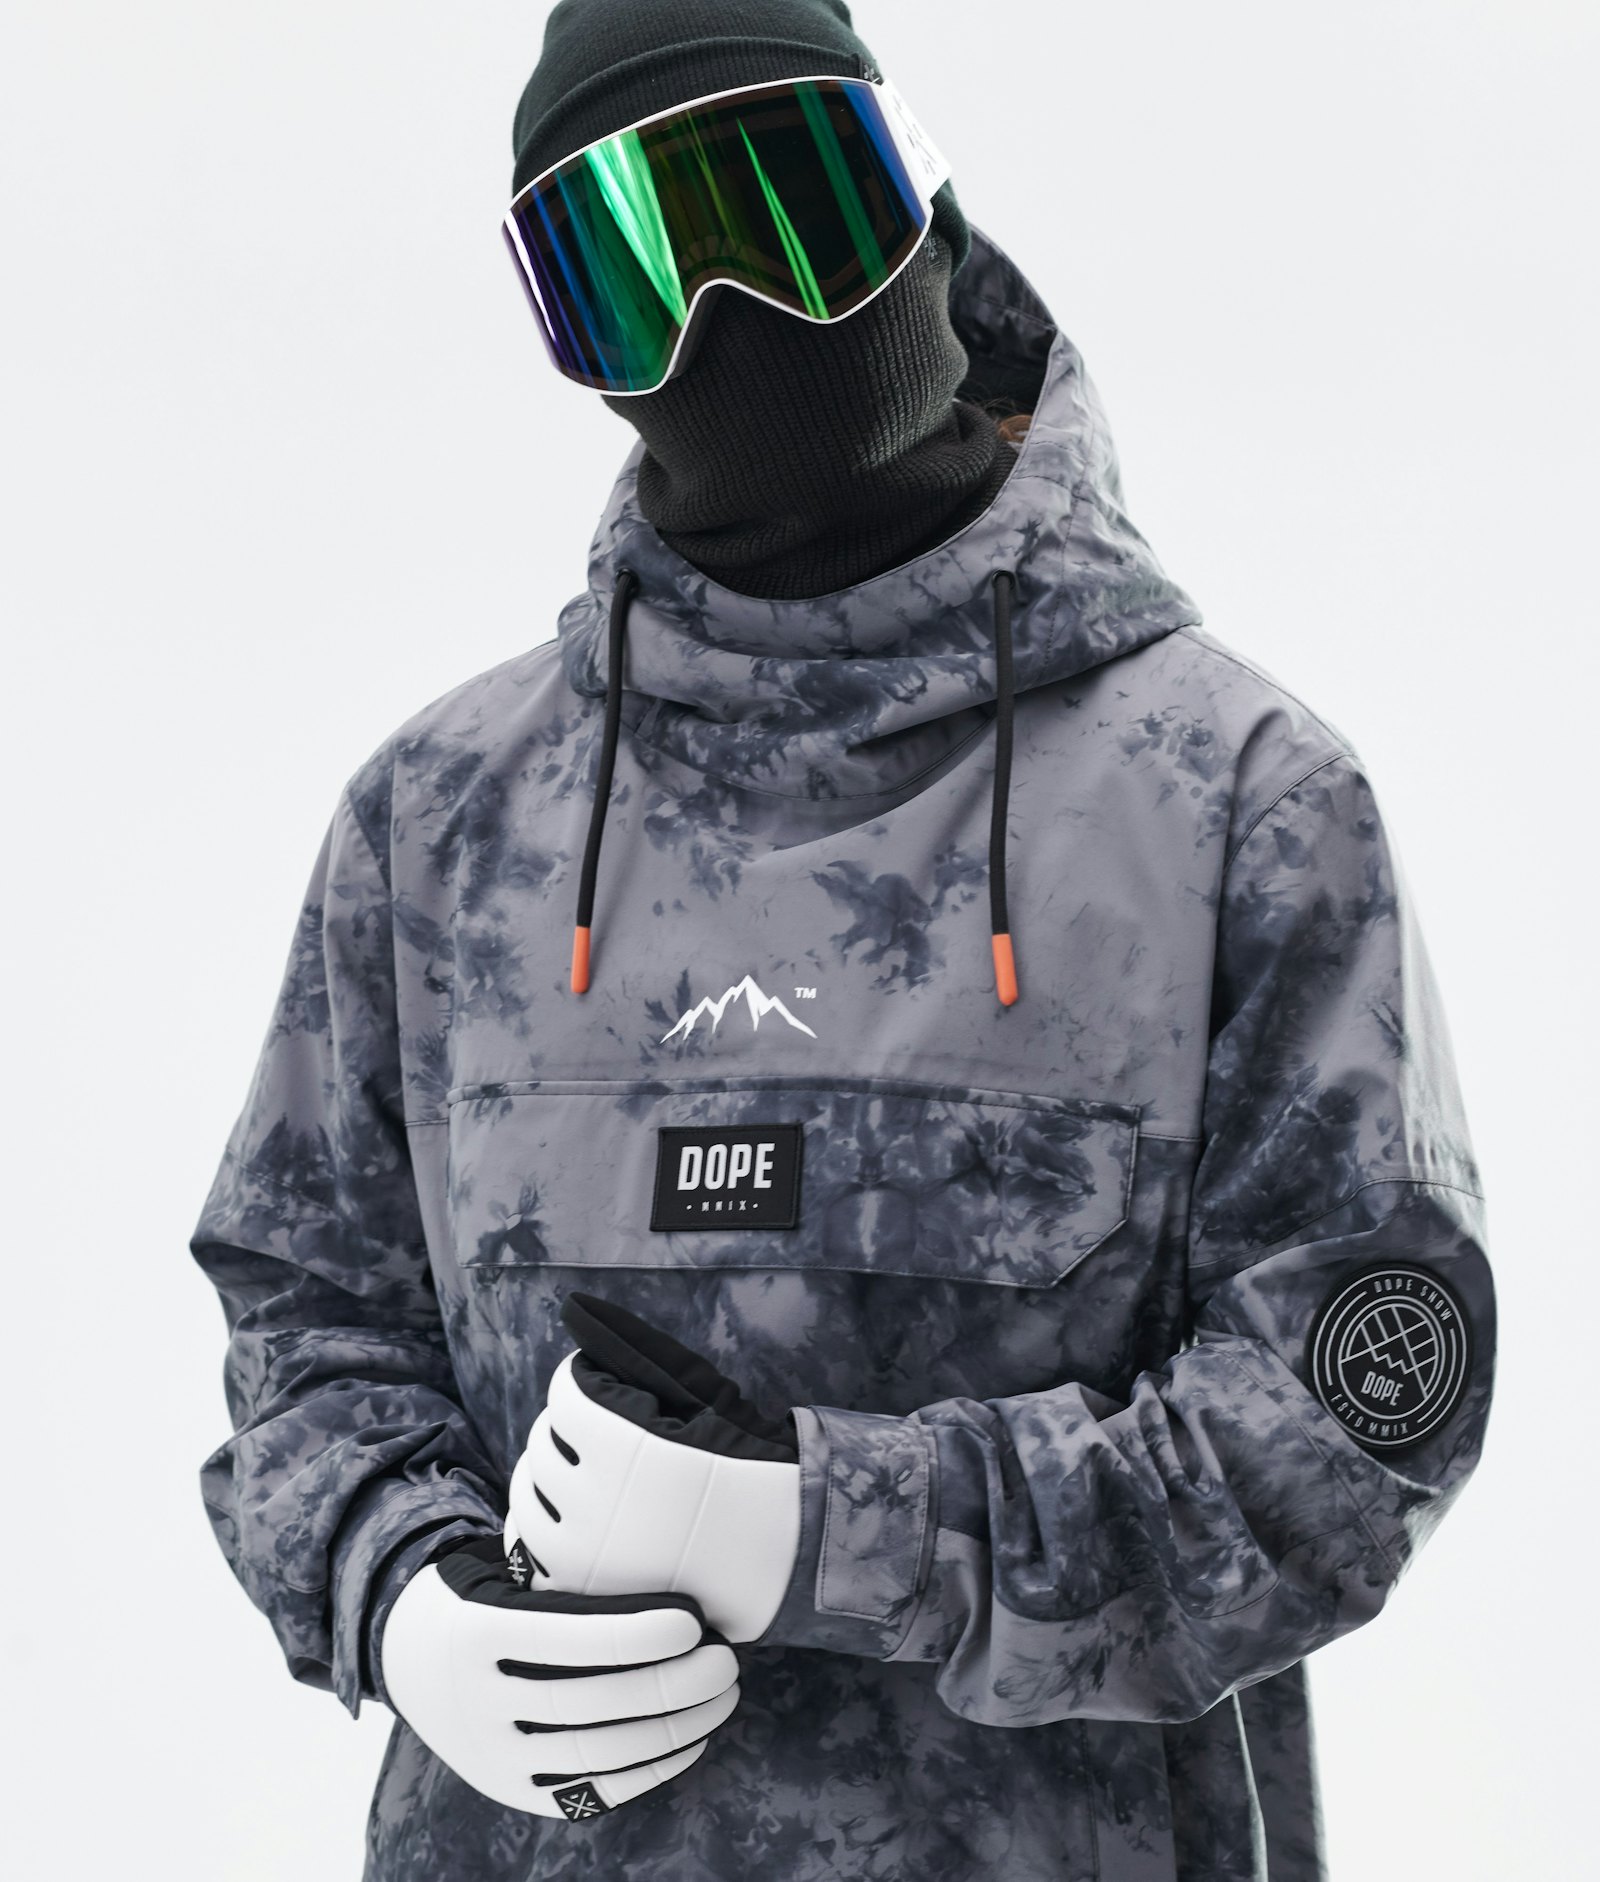 Dope Blizzard 2020 Snowboard jas Heren Limited Edition Tiedye